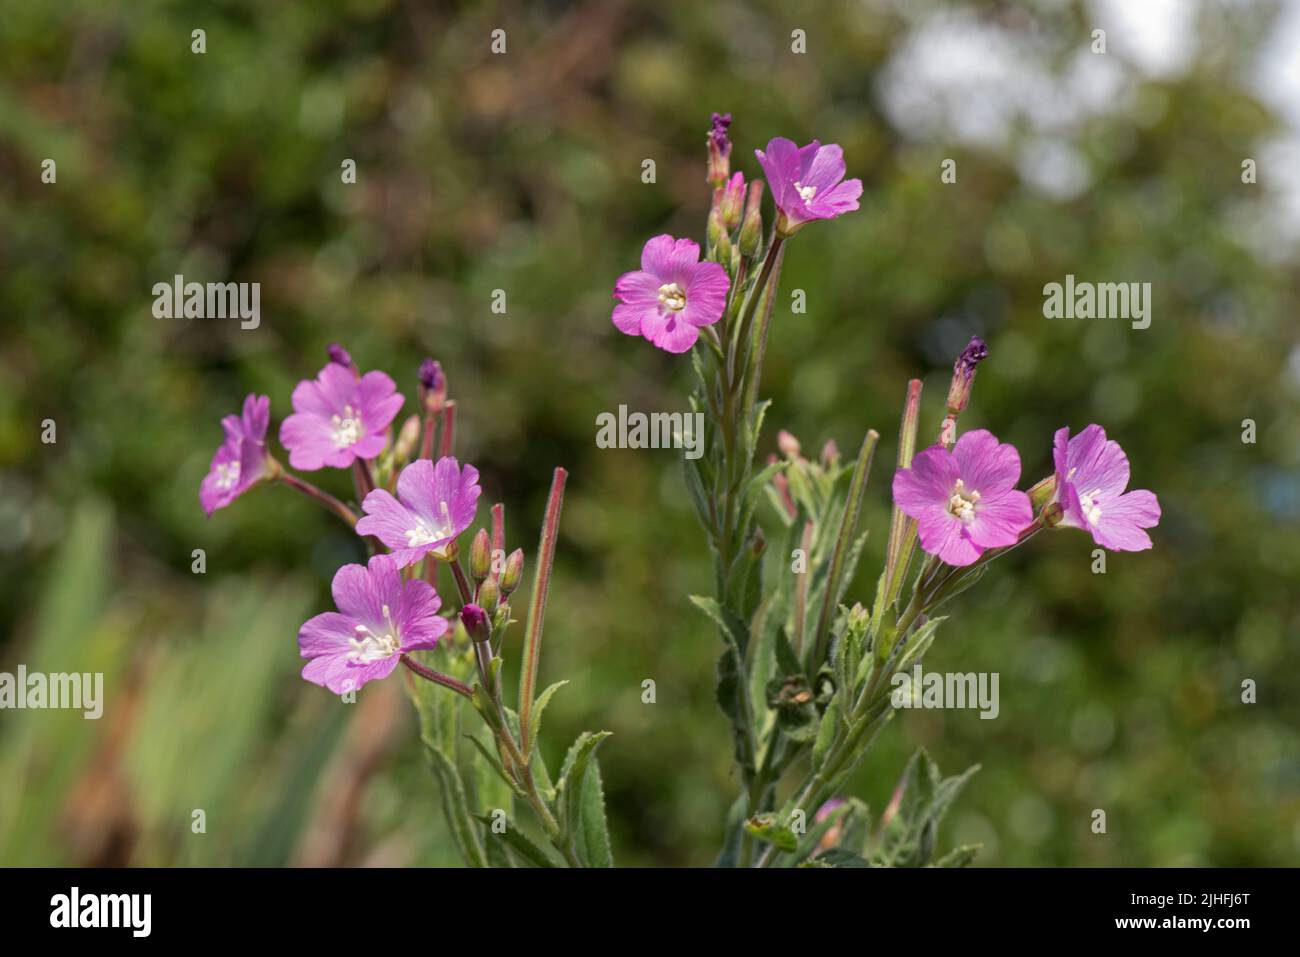 Fleurs roses et semis précoces de la grande plante de willowherb ou de la plante de willowherb poilue (Epilobium hirsutum) sur un sol de déchets secs, Berkshire, juillet Banque D'Images